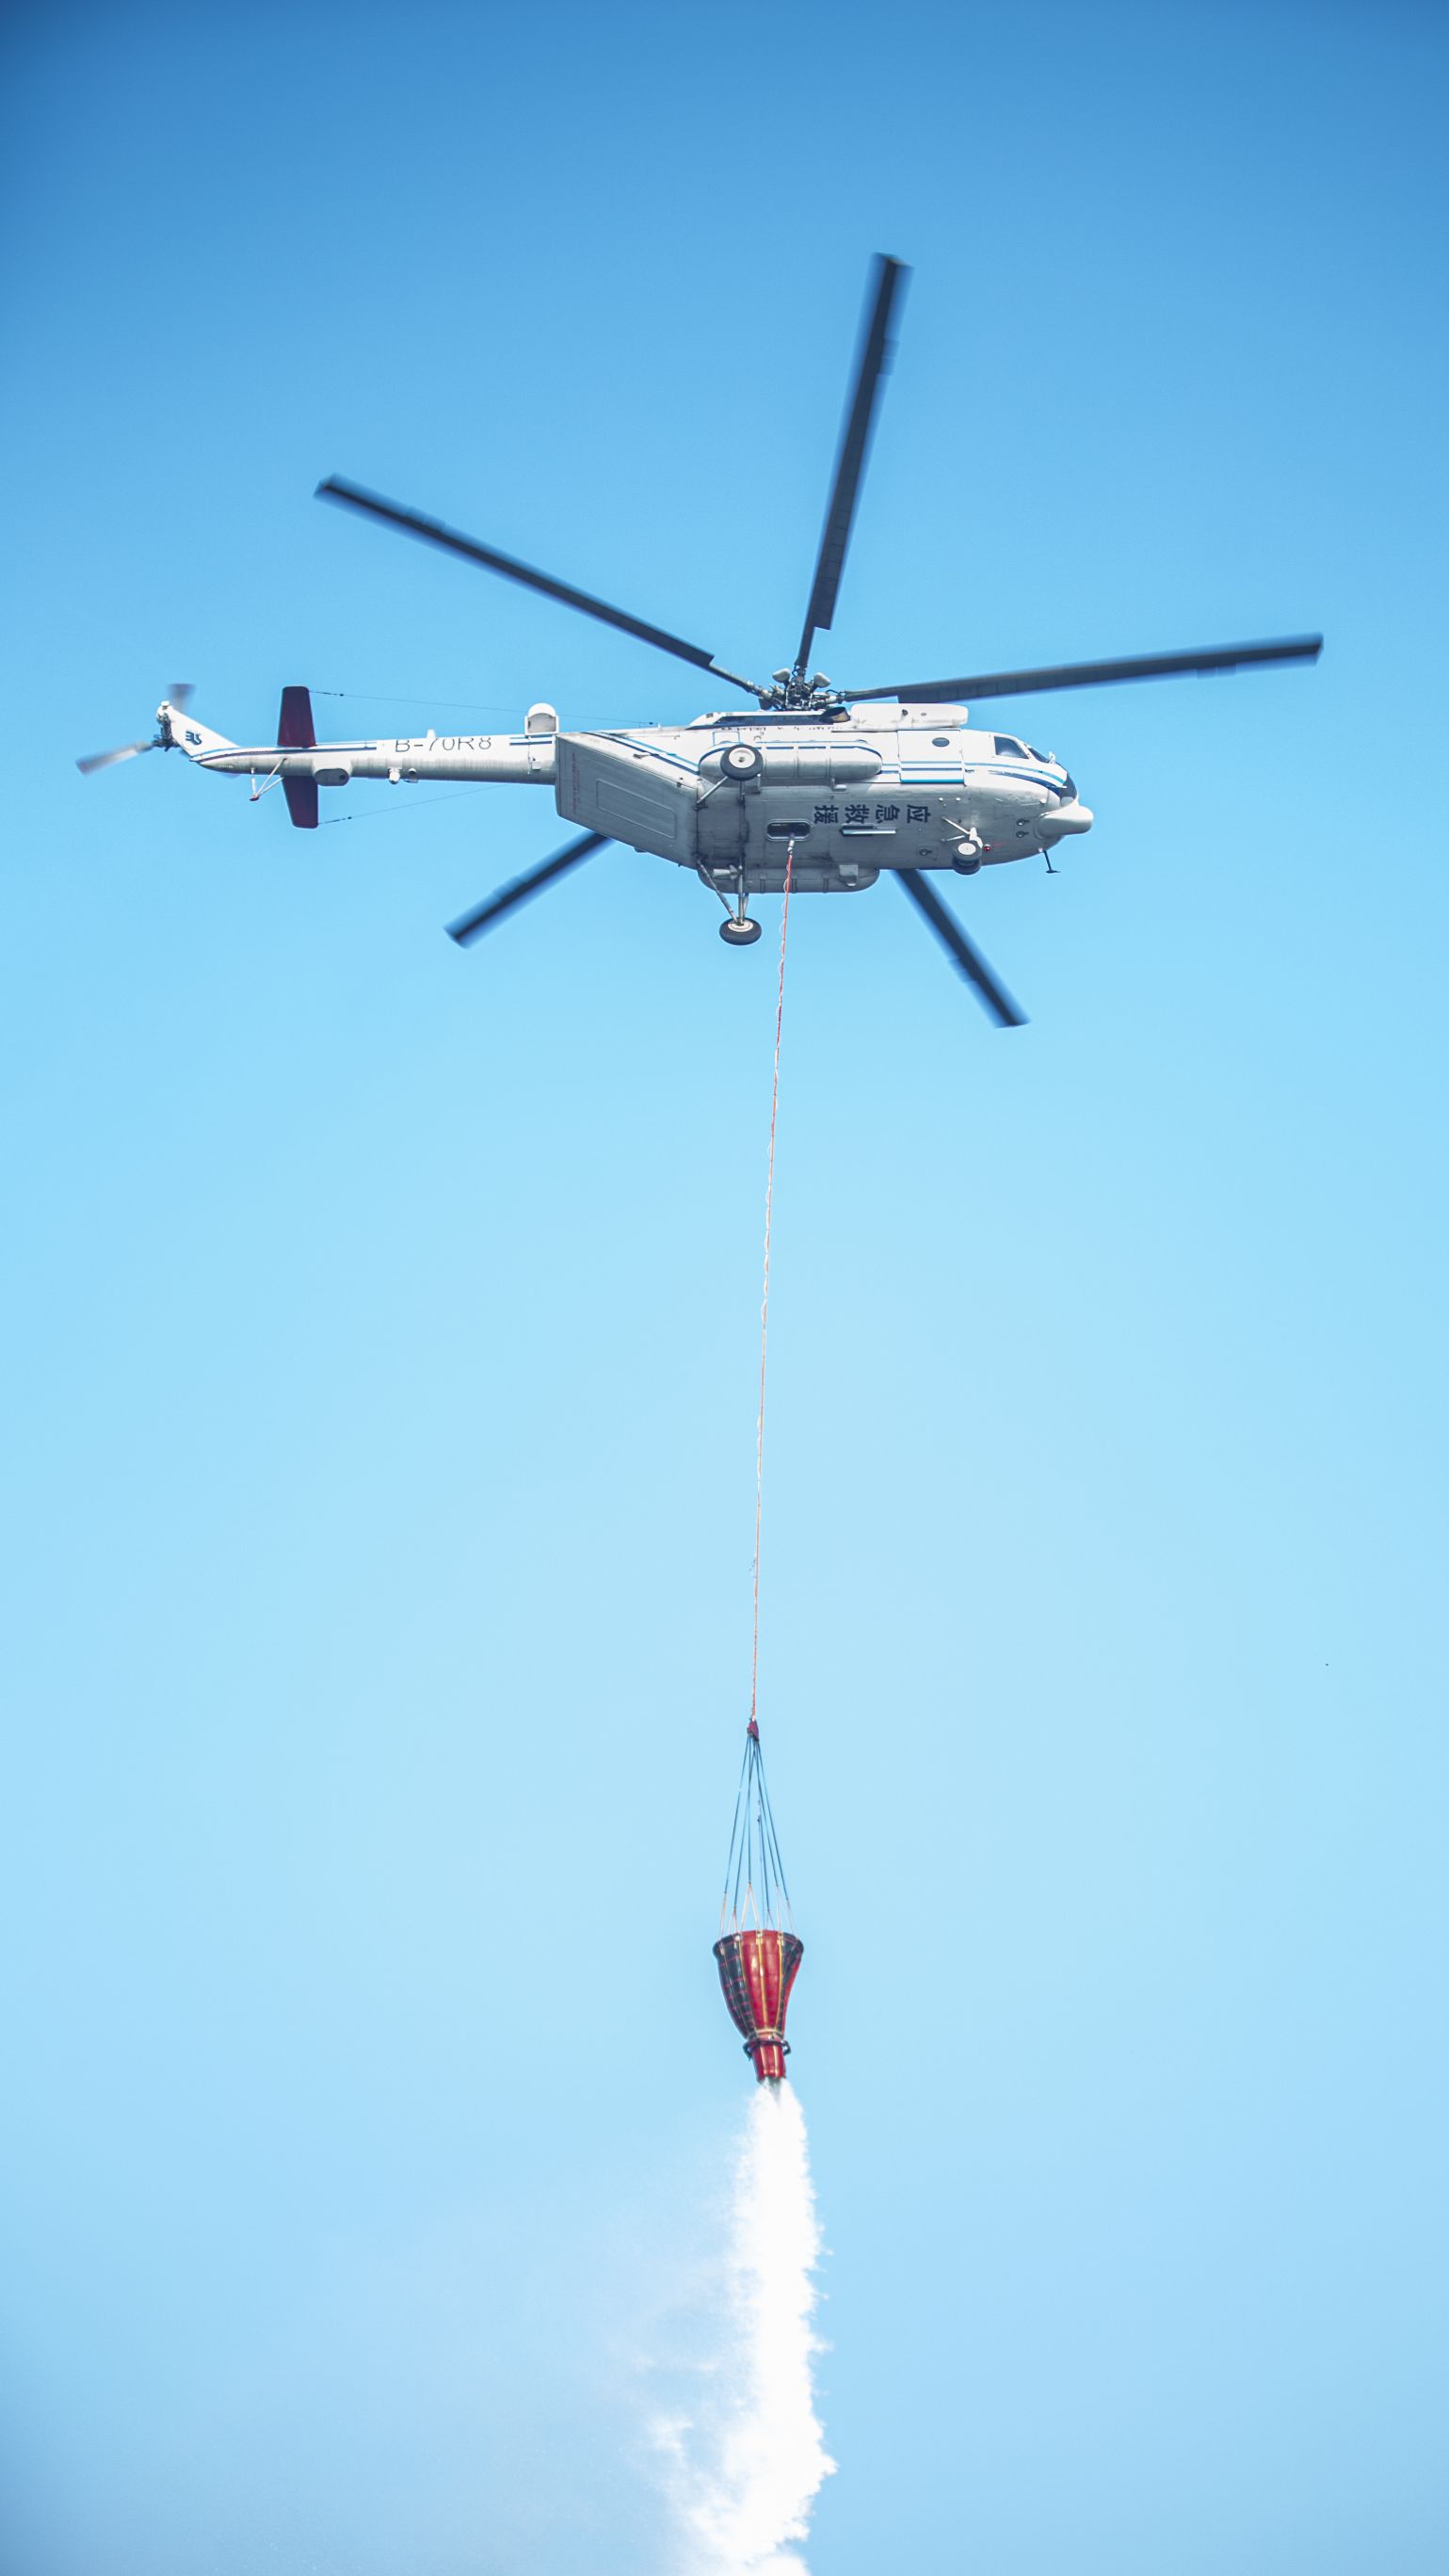 演练直升机吊桶作业科目。成都市应急局供图